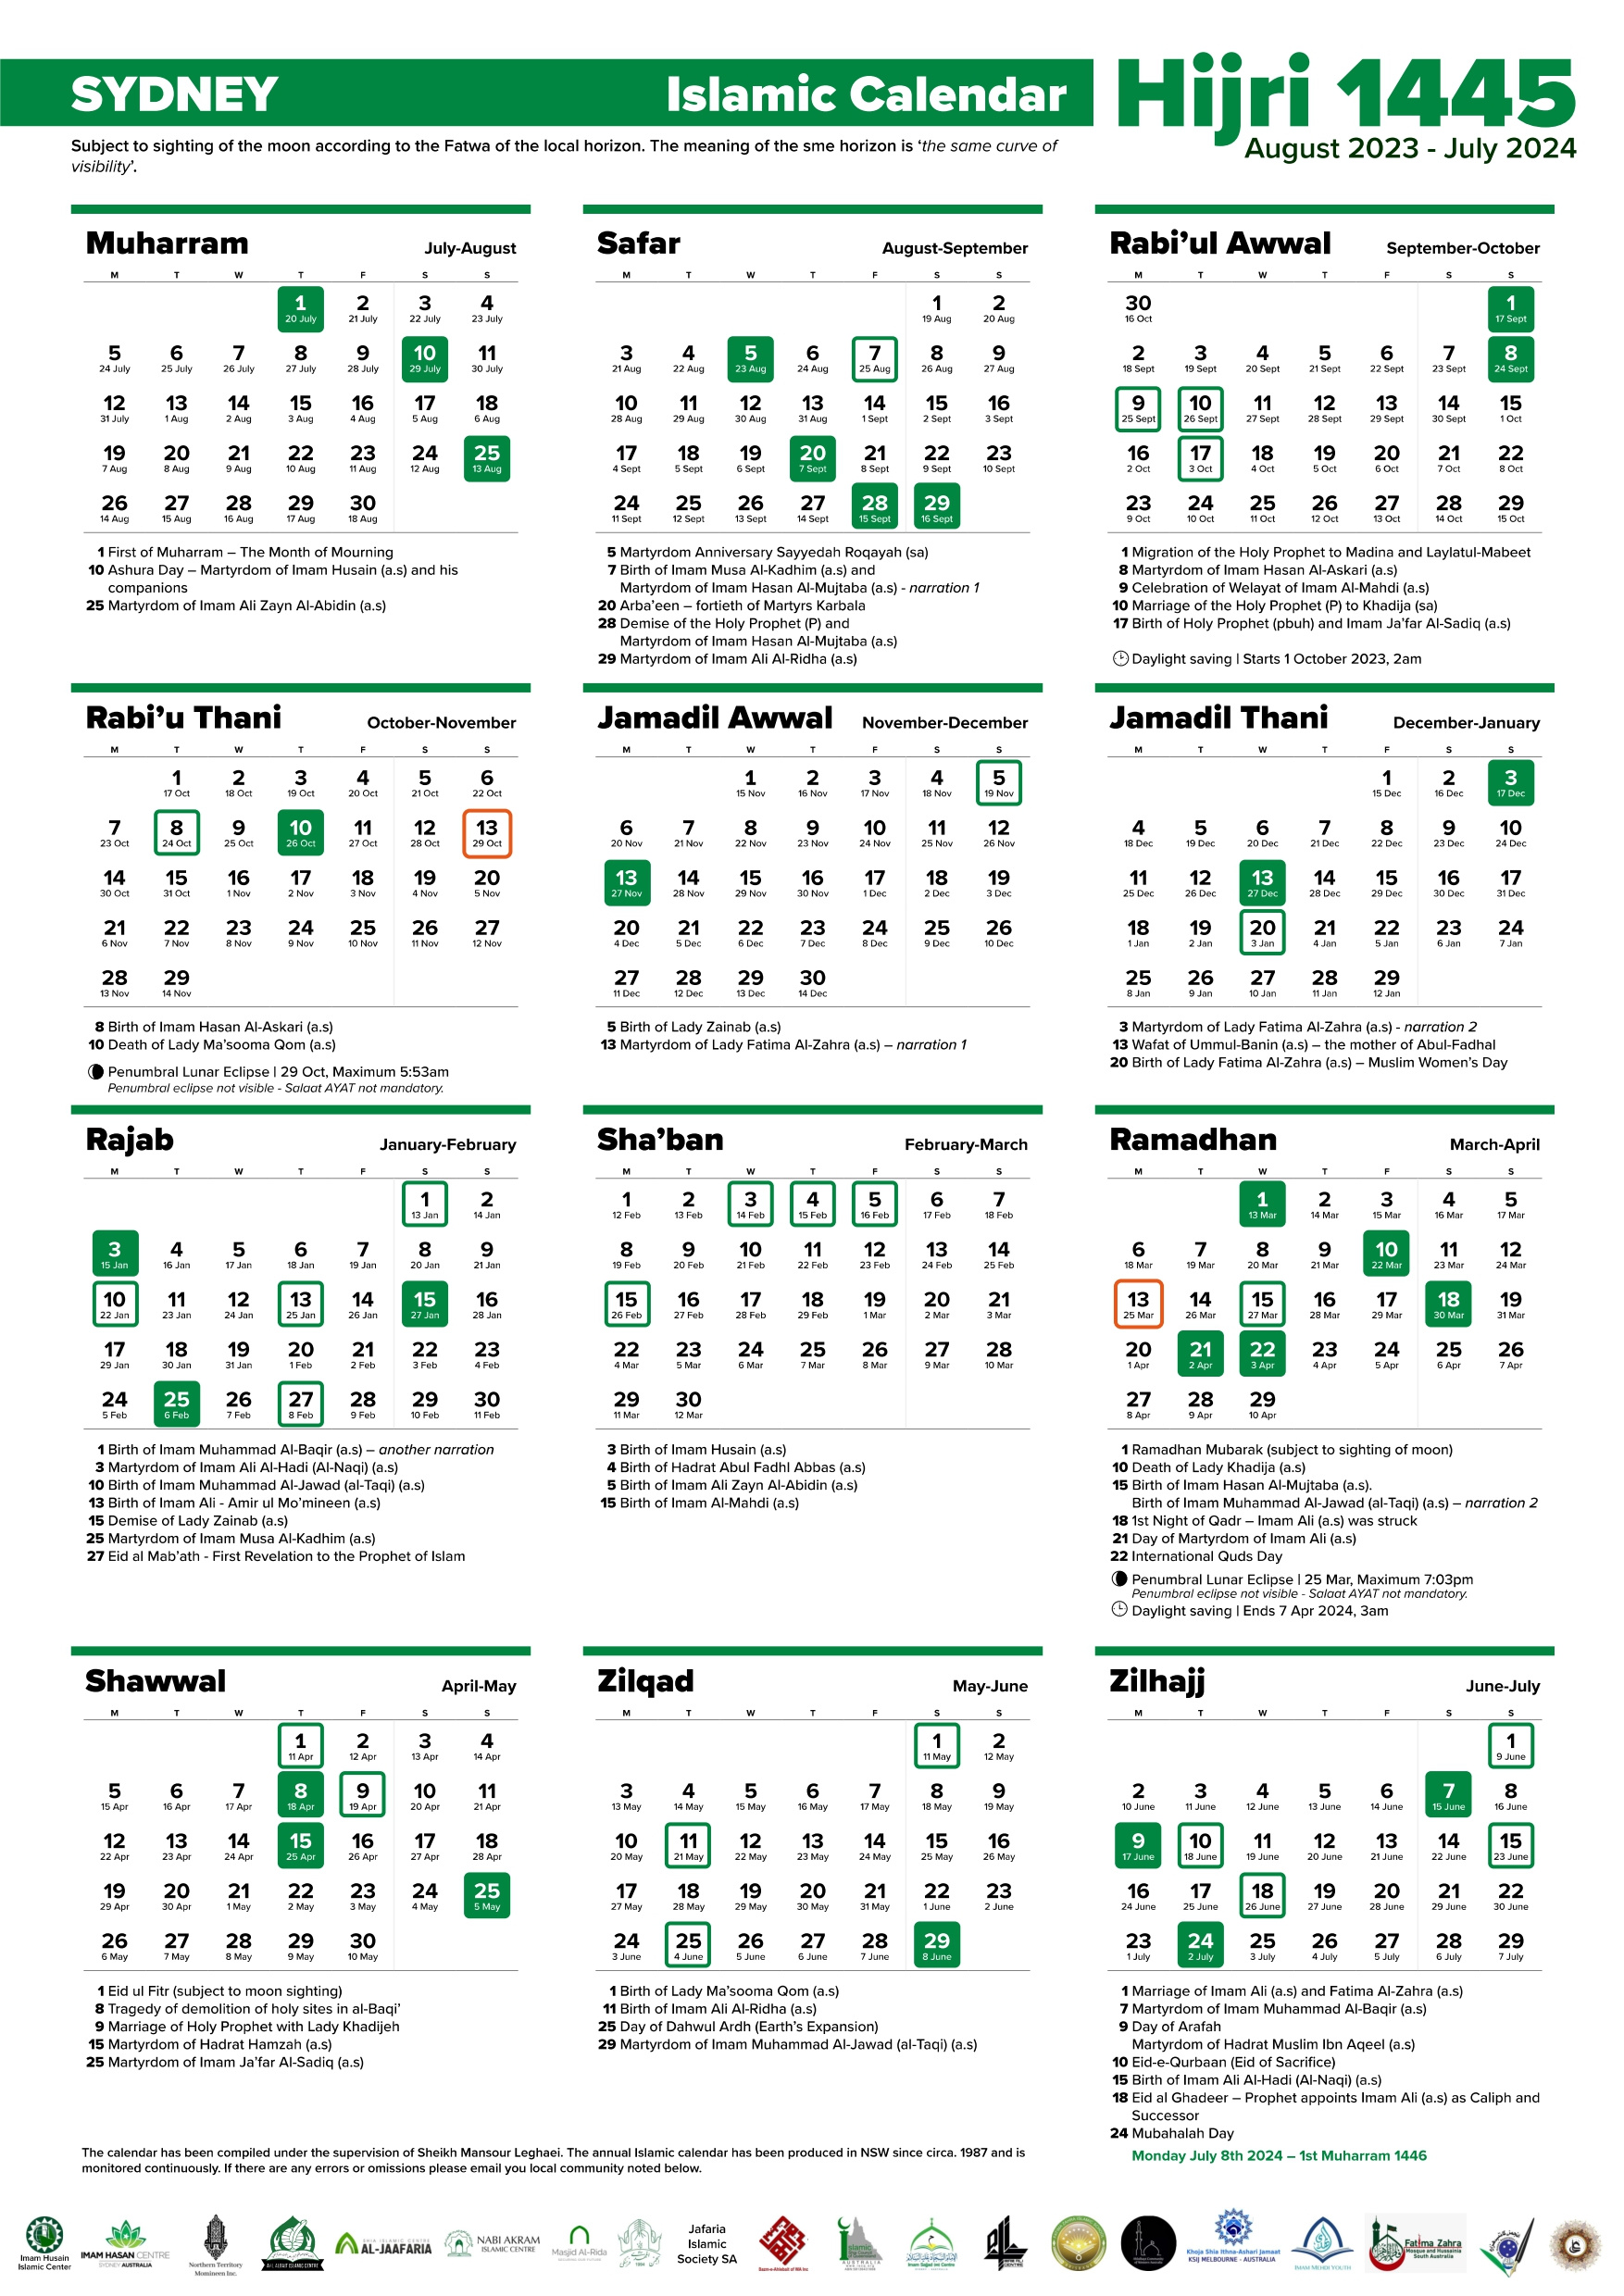 Annual Islamic Calendar 1445 Ah / 2023-2024 Ad – Imam Husain throughout 12 July 2024 in Islamic Calendar